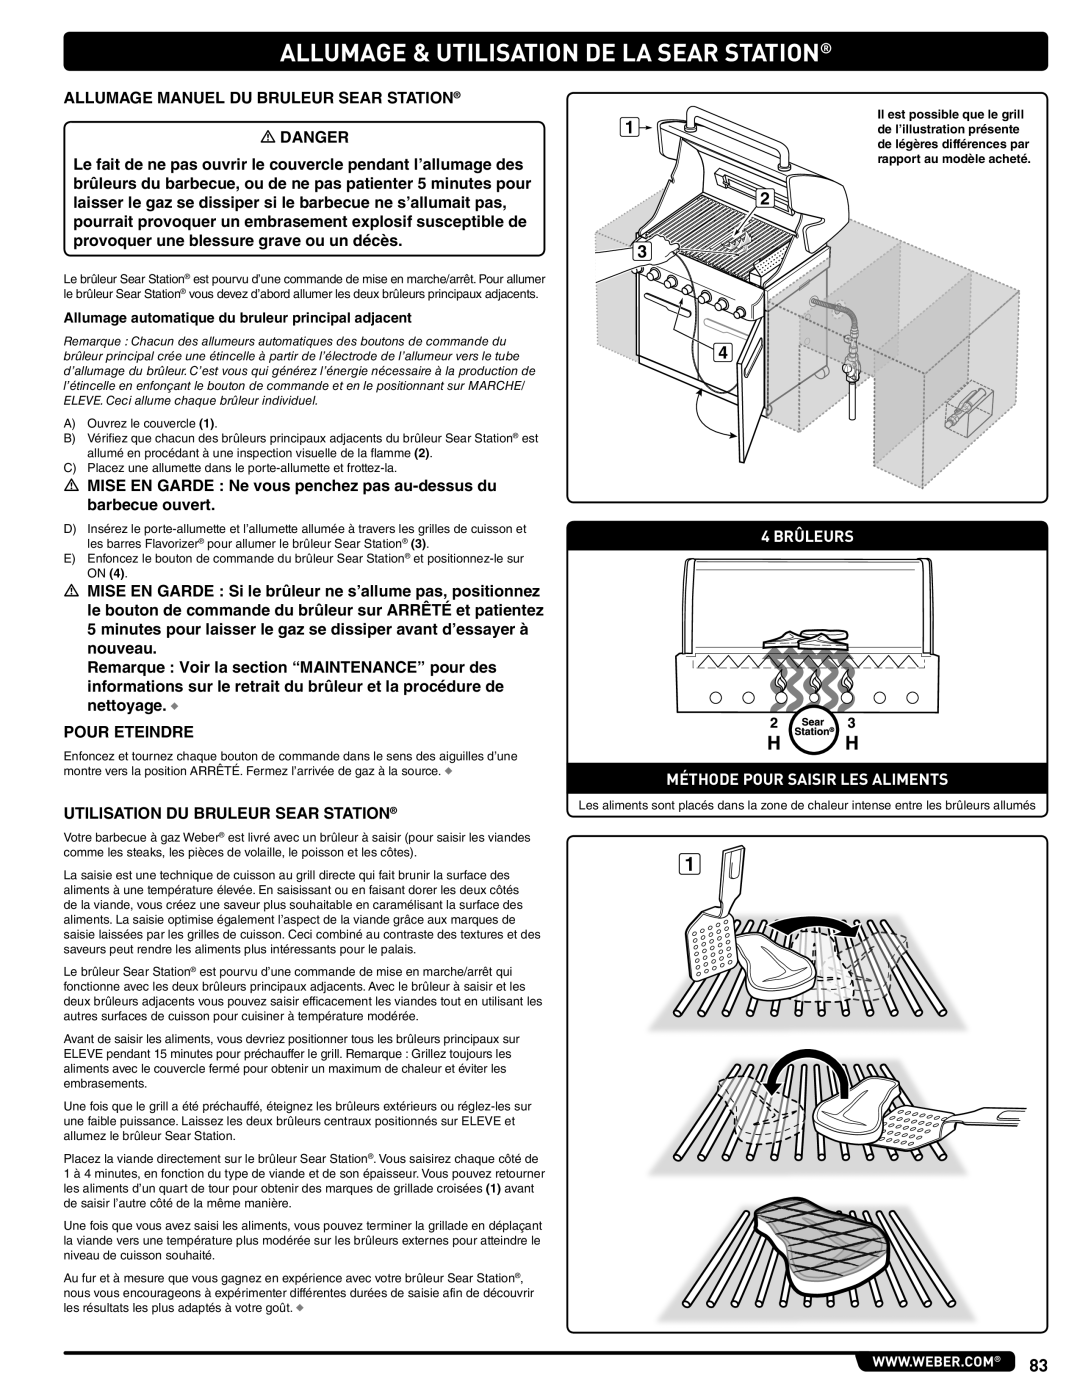 Weber 56576 manual Allumage & Utilisation De La Sear Station, 4 BRÛLEURS MÉTHODE POUR SAISIR LES ALIMENTS 